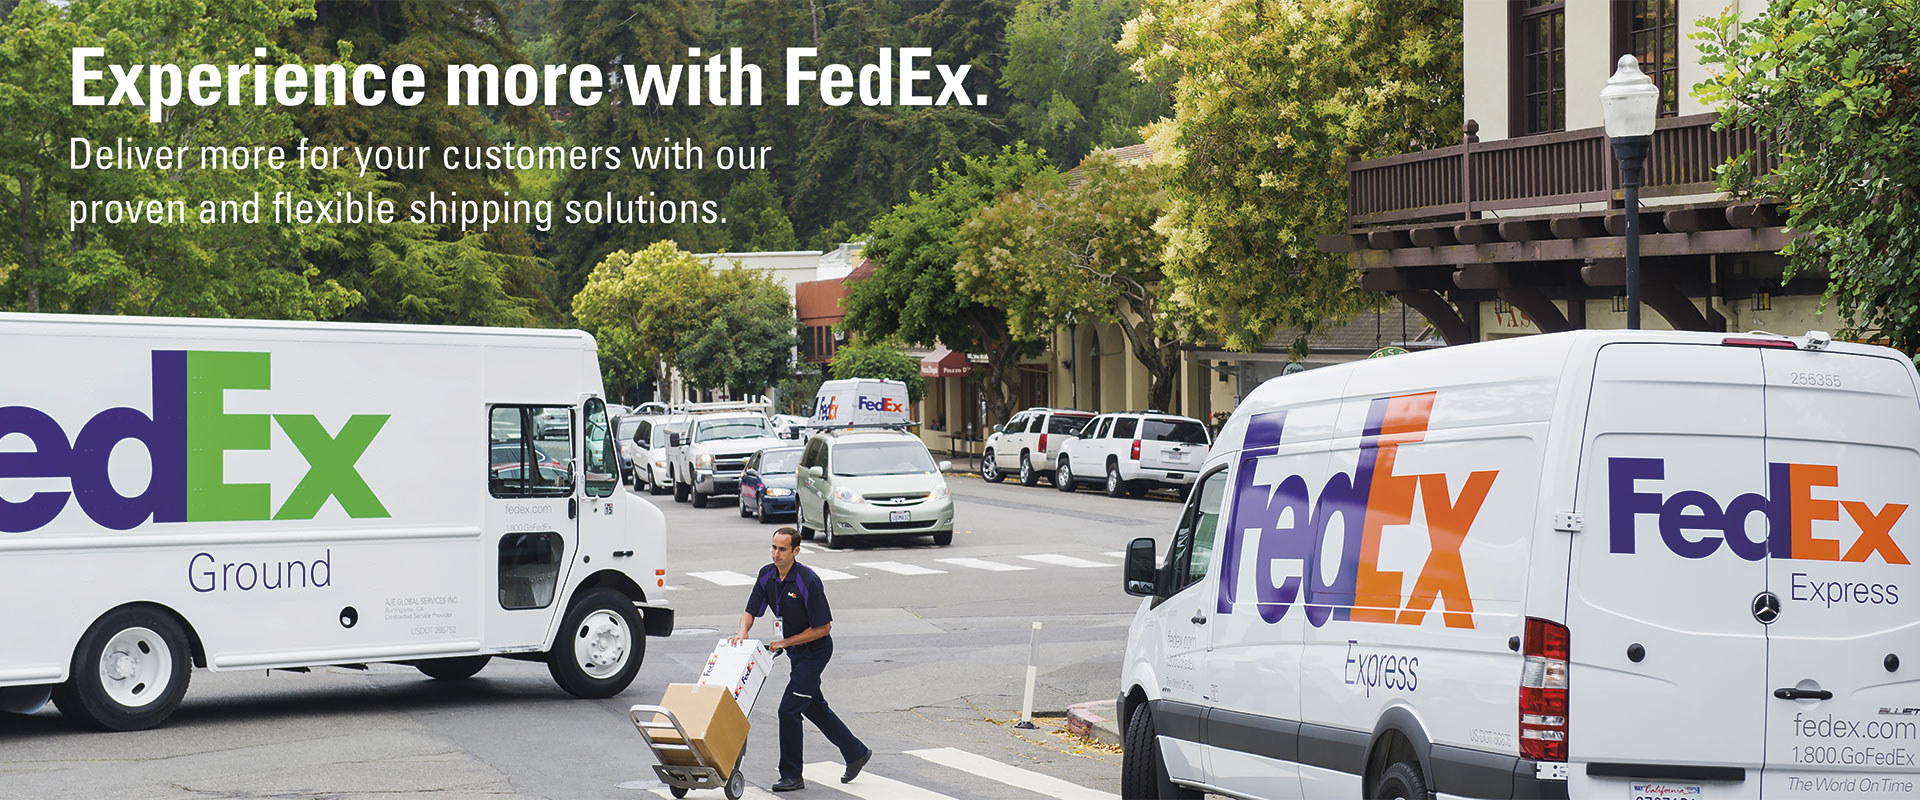 FedEx Booth back wall